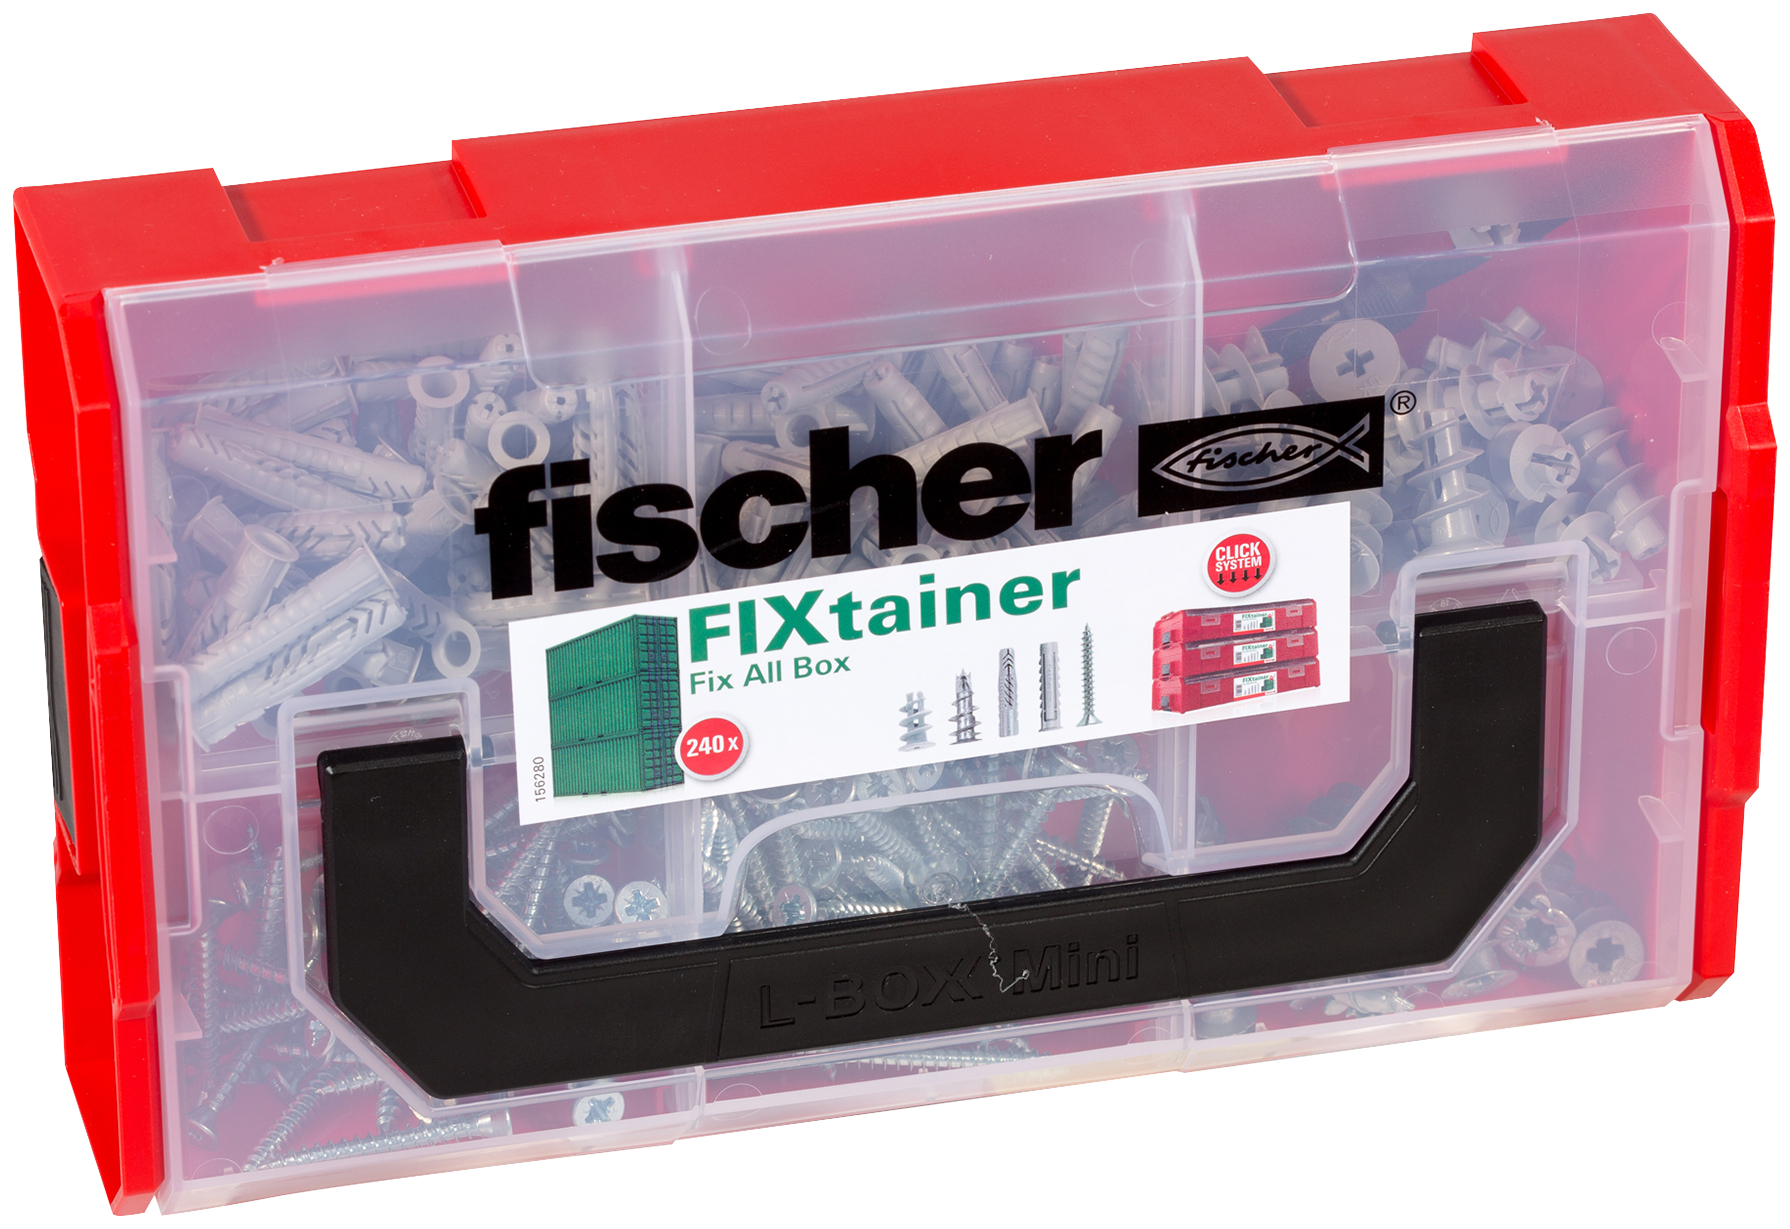 fischer FIXtainer UX SX GK screw (141 Pz.) Pratiche soluzioni di fissaggio per le pi comuni applicazioni nel fischer FixTainer impilabile e di alta qualit fie2751